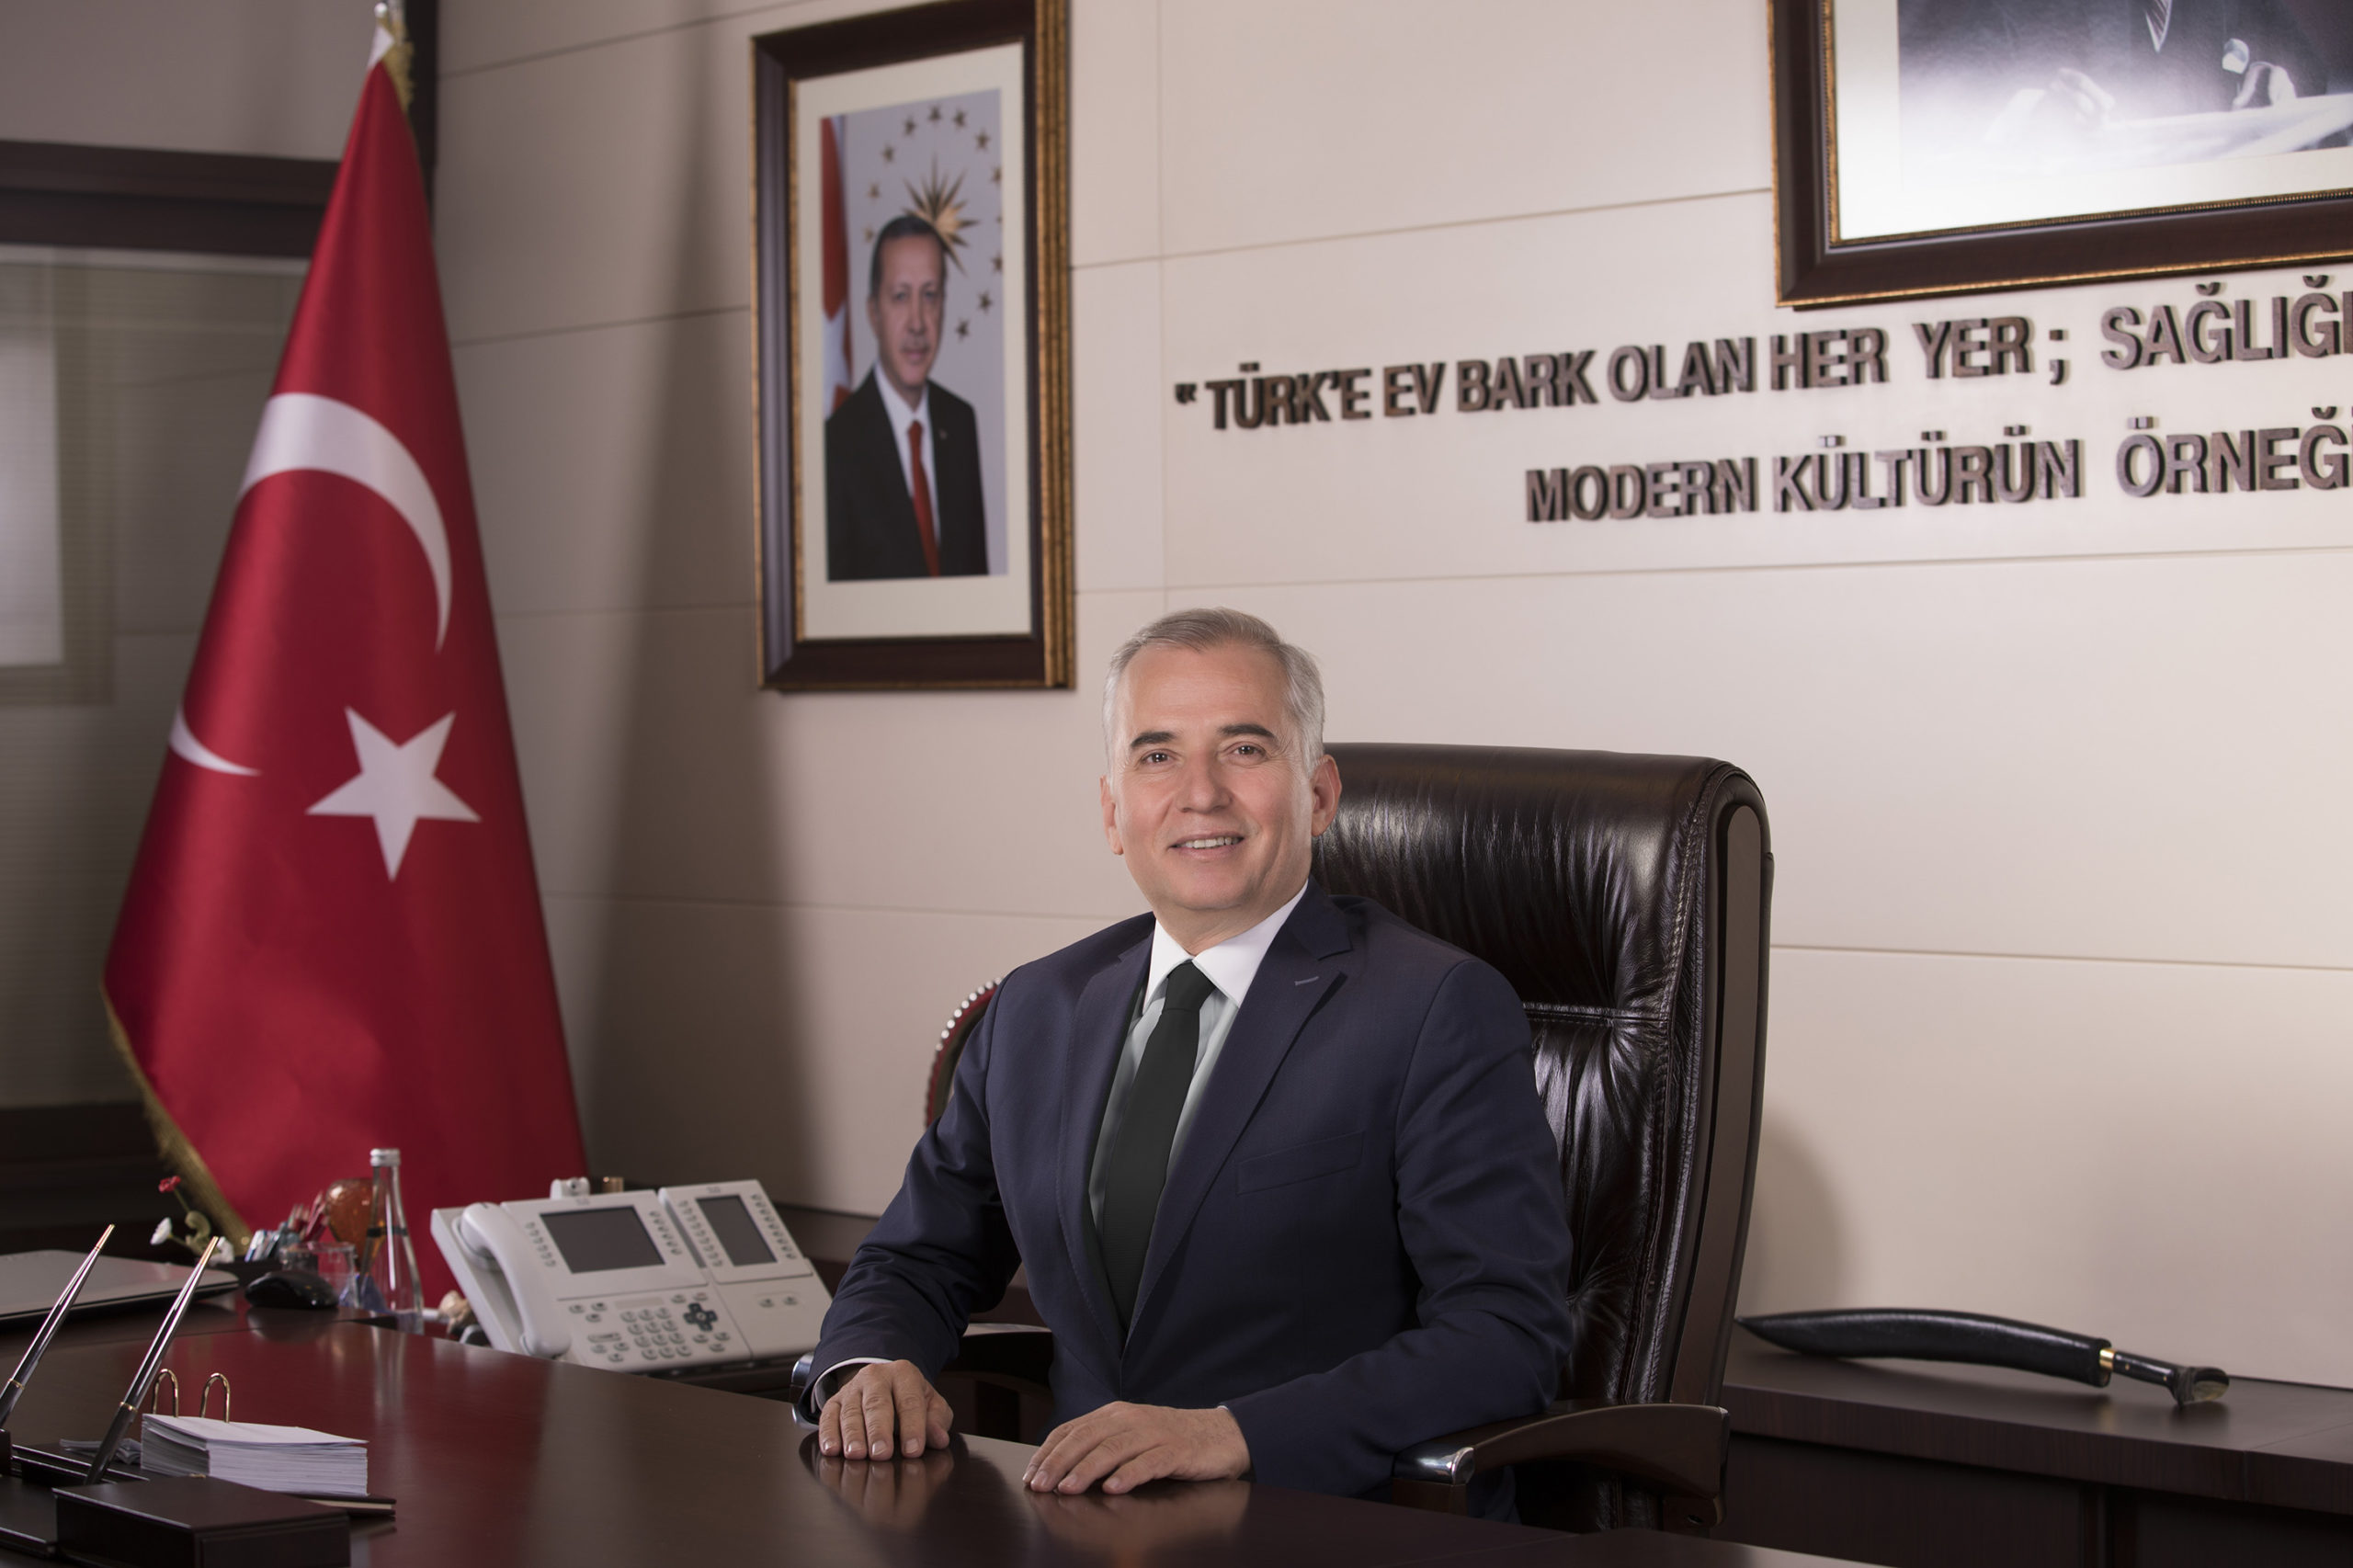  Denizli Büyükşehir Belediye  Başkanı Zolan’dan Bayram Mesajı